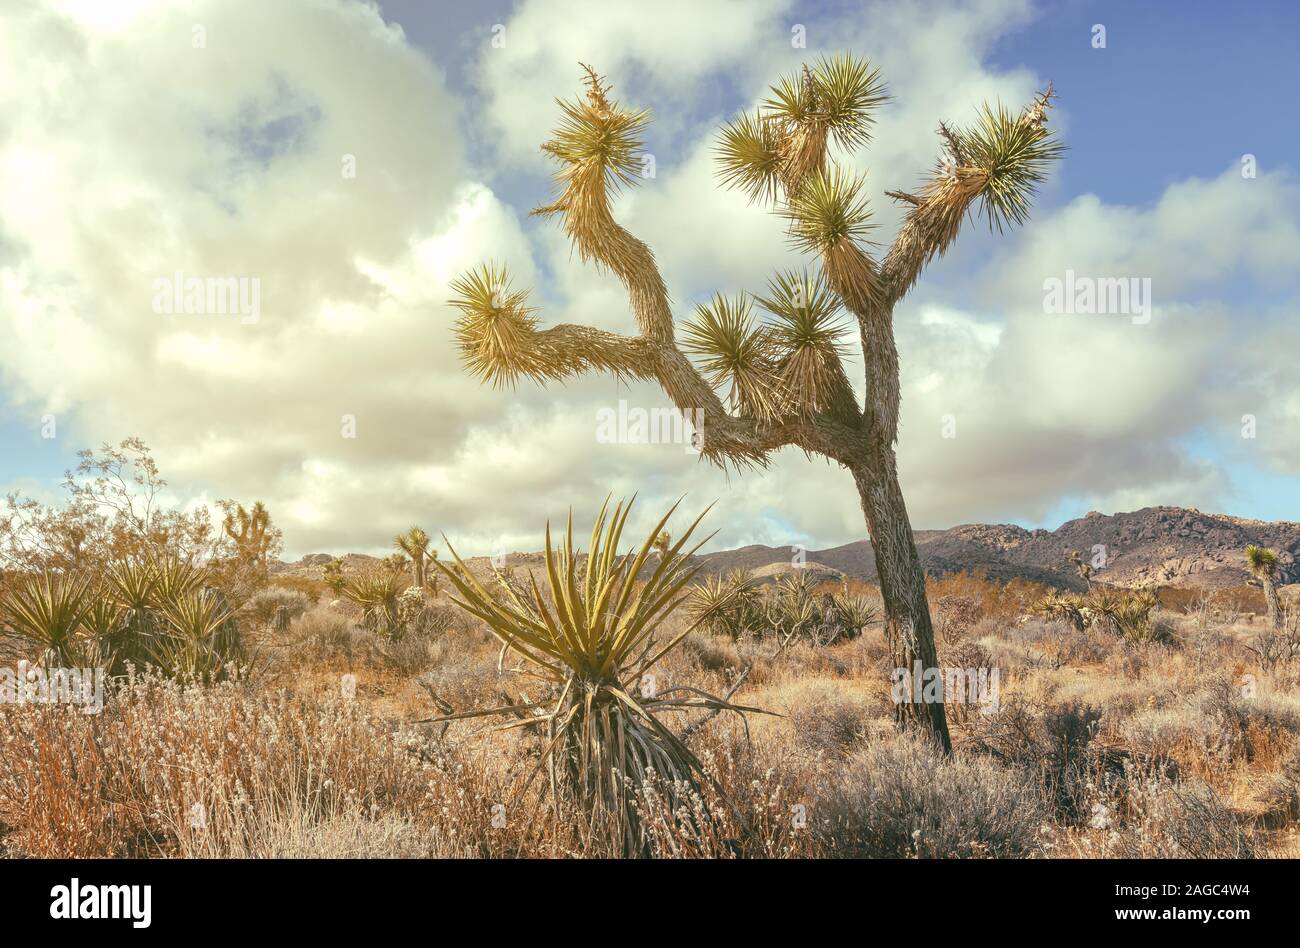 Joshua tree (Yucca brevifolia) and the ecosystem at Joshua Tree National Park, California, USA. Stock Photo